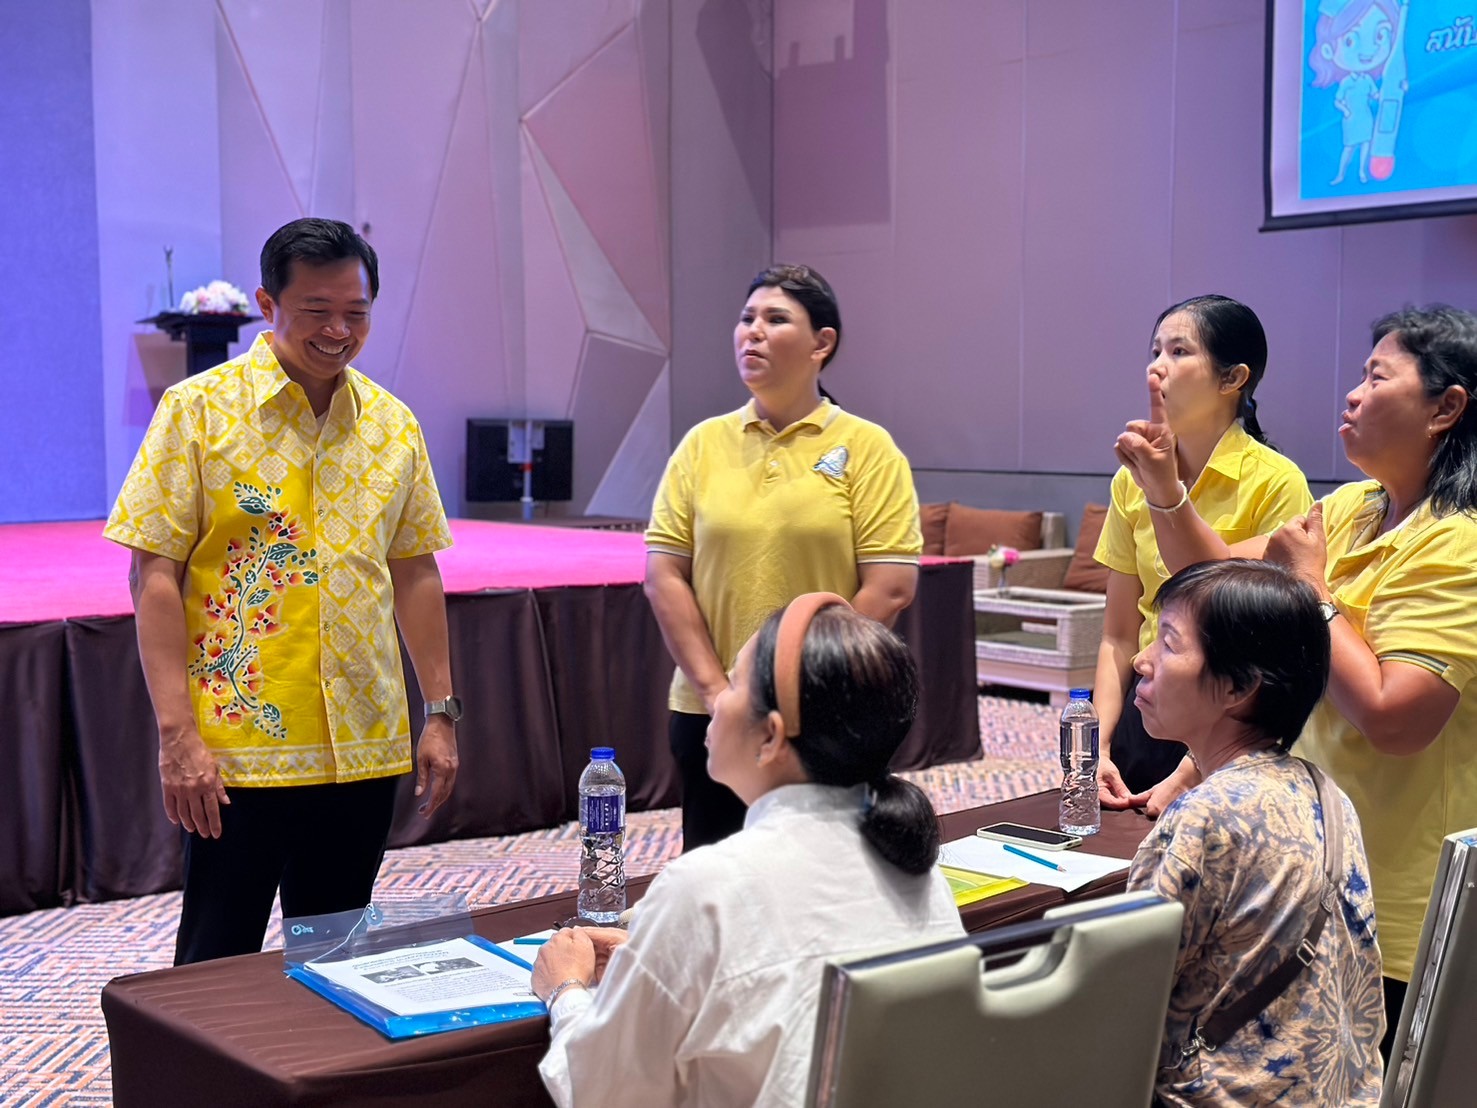 โครงการอบรมเสริมสร้างความรู้เรื่องสุขสภาพแก่คนหูหนวก ประจำปี 2567 ในวันที่ 20 - 21 กรกฎาคม 2567 ณ โรงแรมเจปาร์ค ตำบลนาป่า อำเภอเมือง จังหวัดชลบุรี